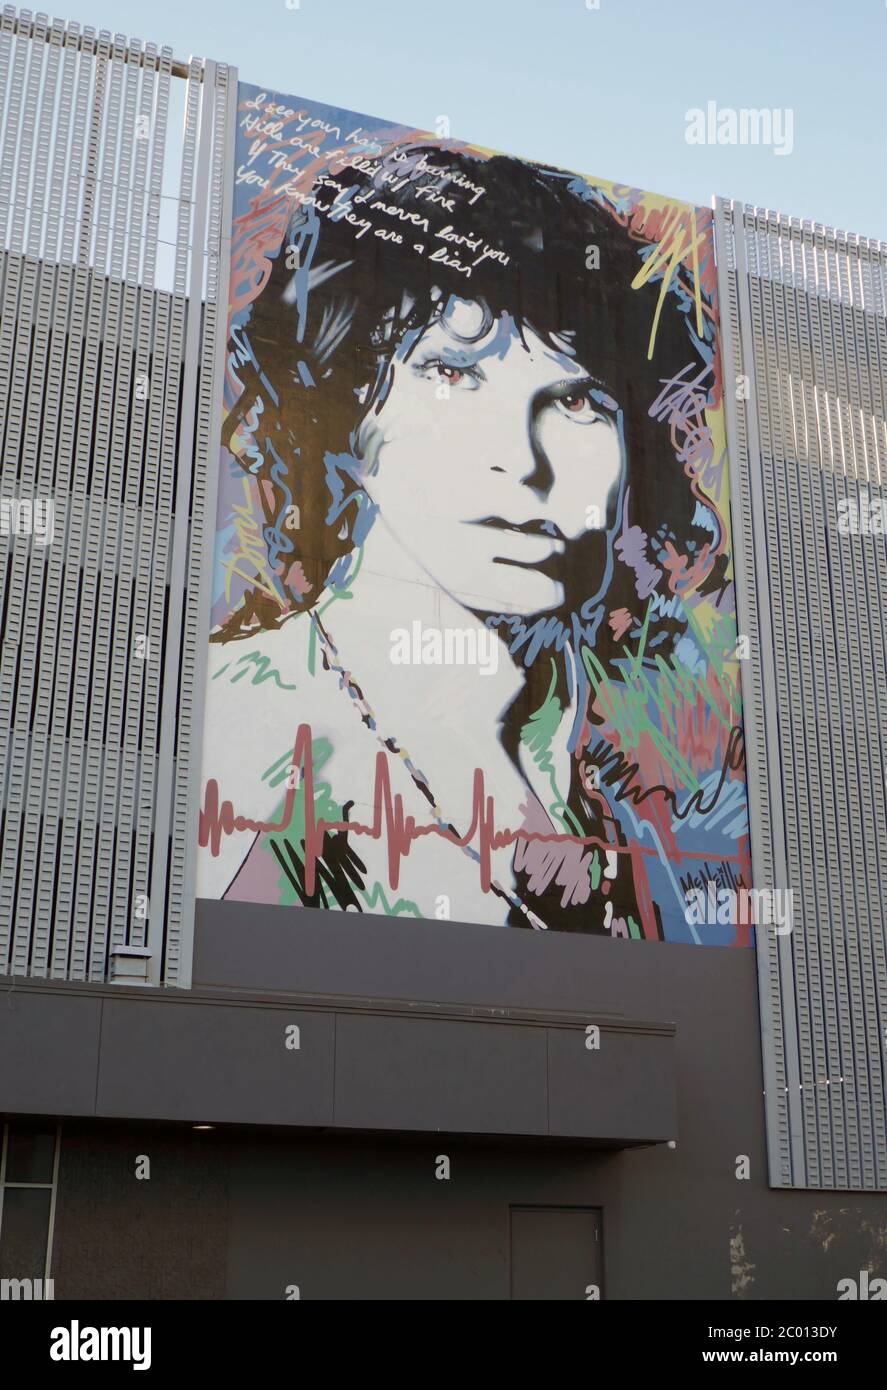 Hollywood, California, USA 9 giugno 2020 una visione generale di Jim Morrison della Doors Mural Street Art il 9 giugno 2020 a Hollywood, California, USA. Foto di Barry King/Alamy Stock foto Foto Stock